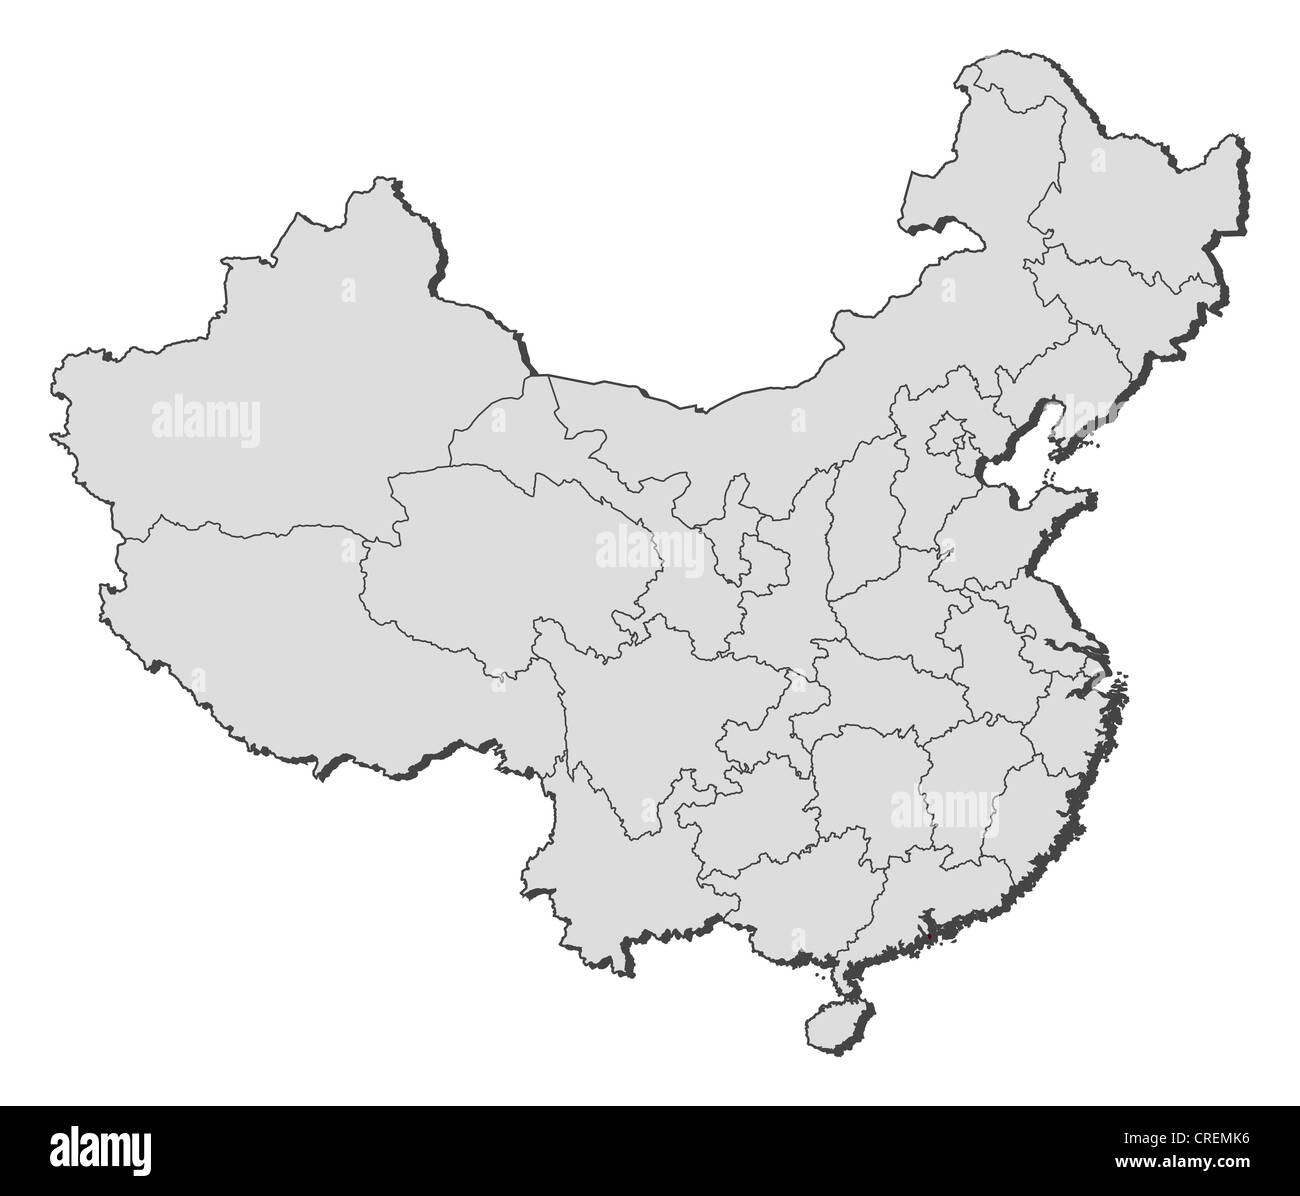 Mappa politica della Cina con le diverse province in cui Macao è evidenziata. Foto Stock